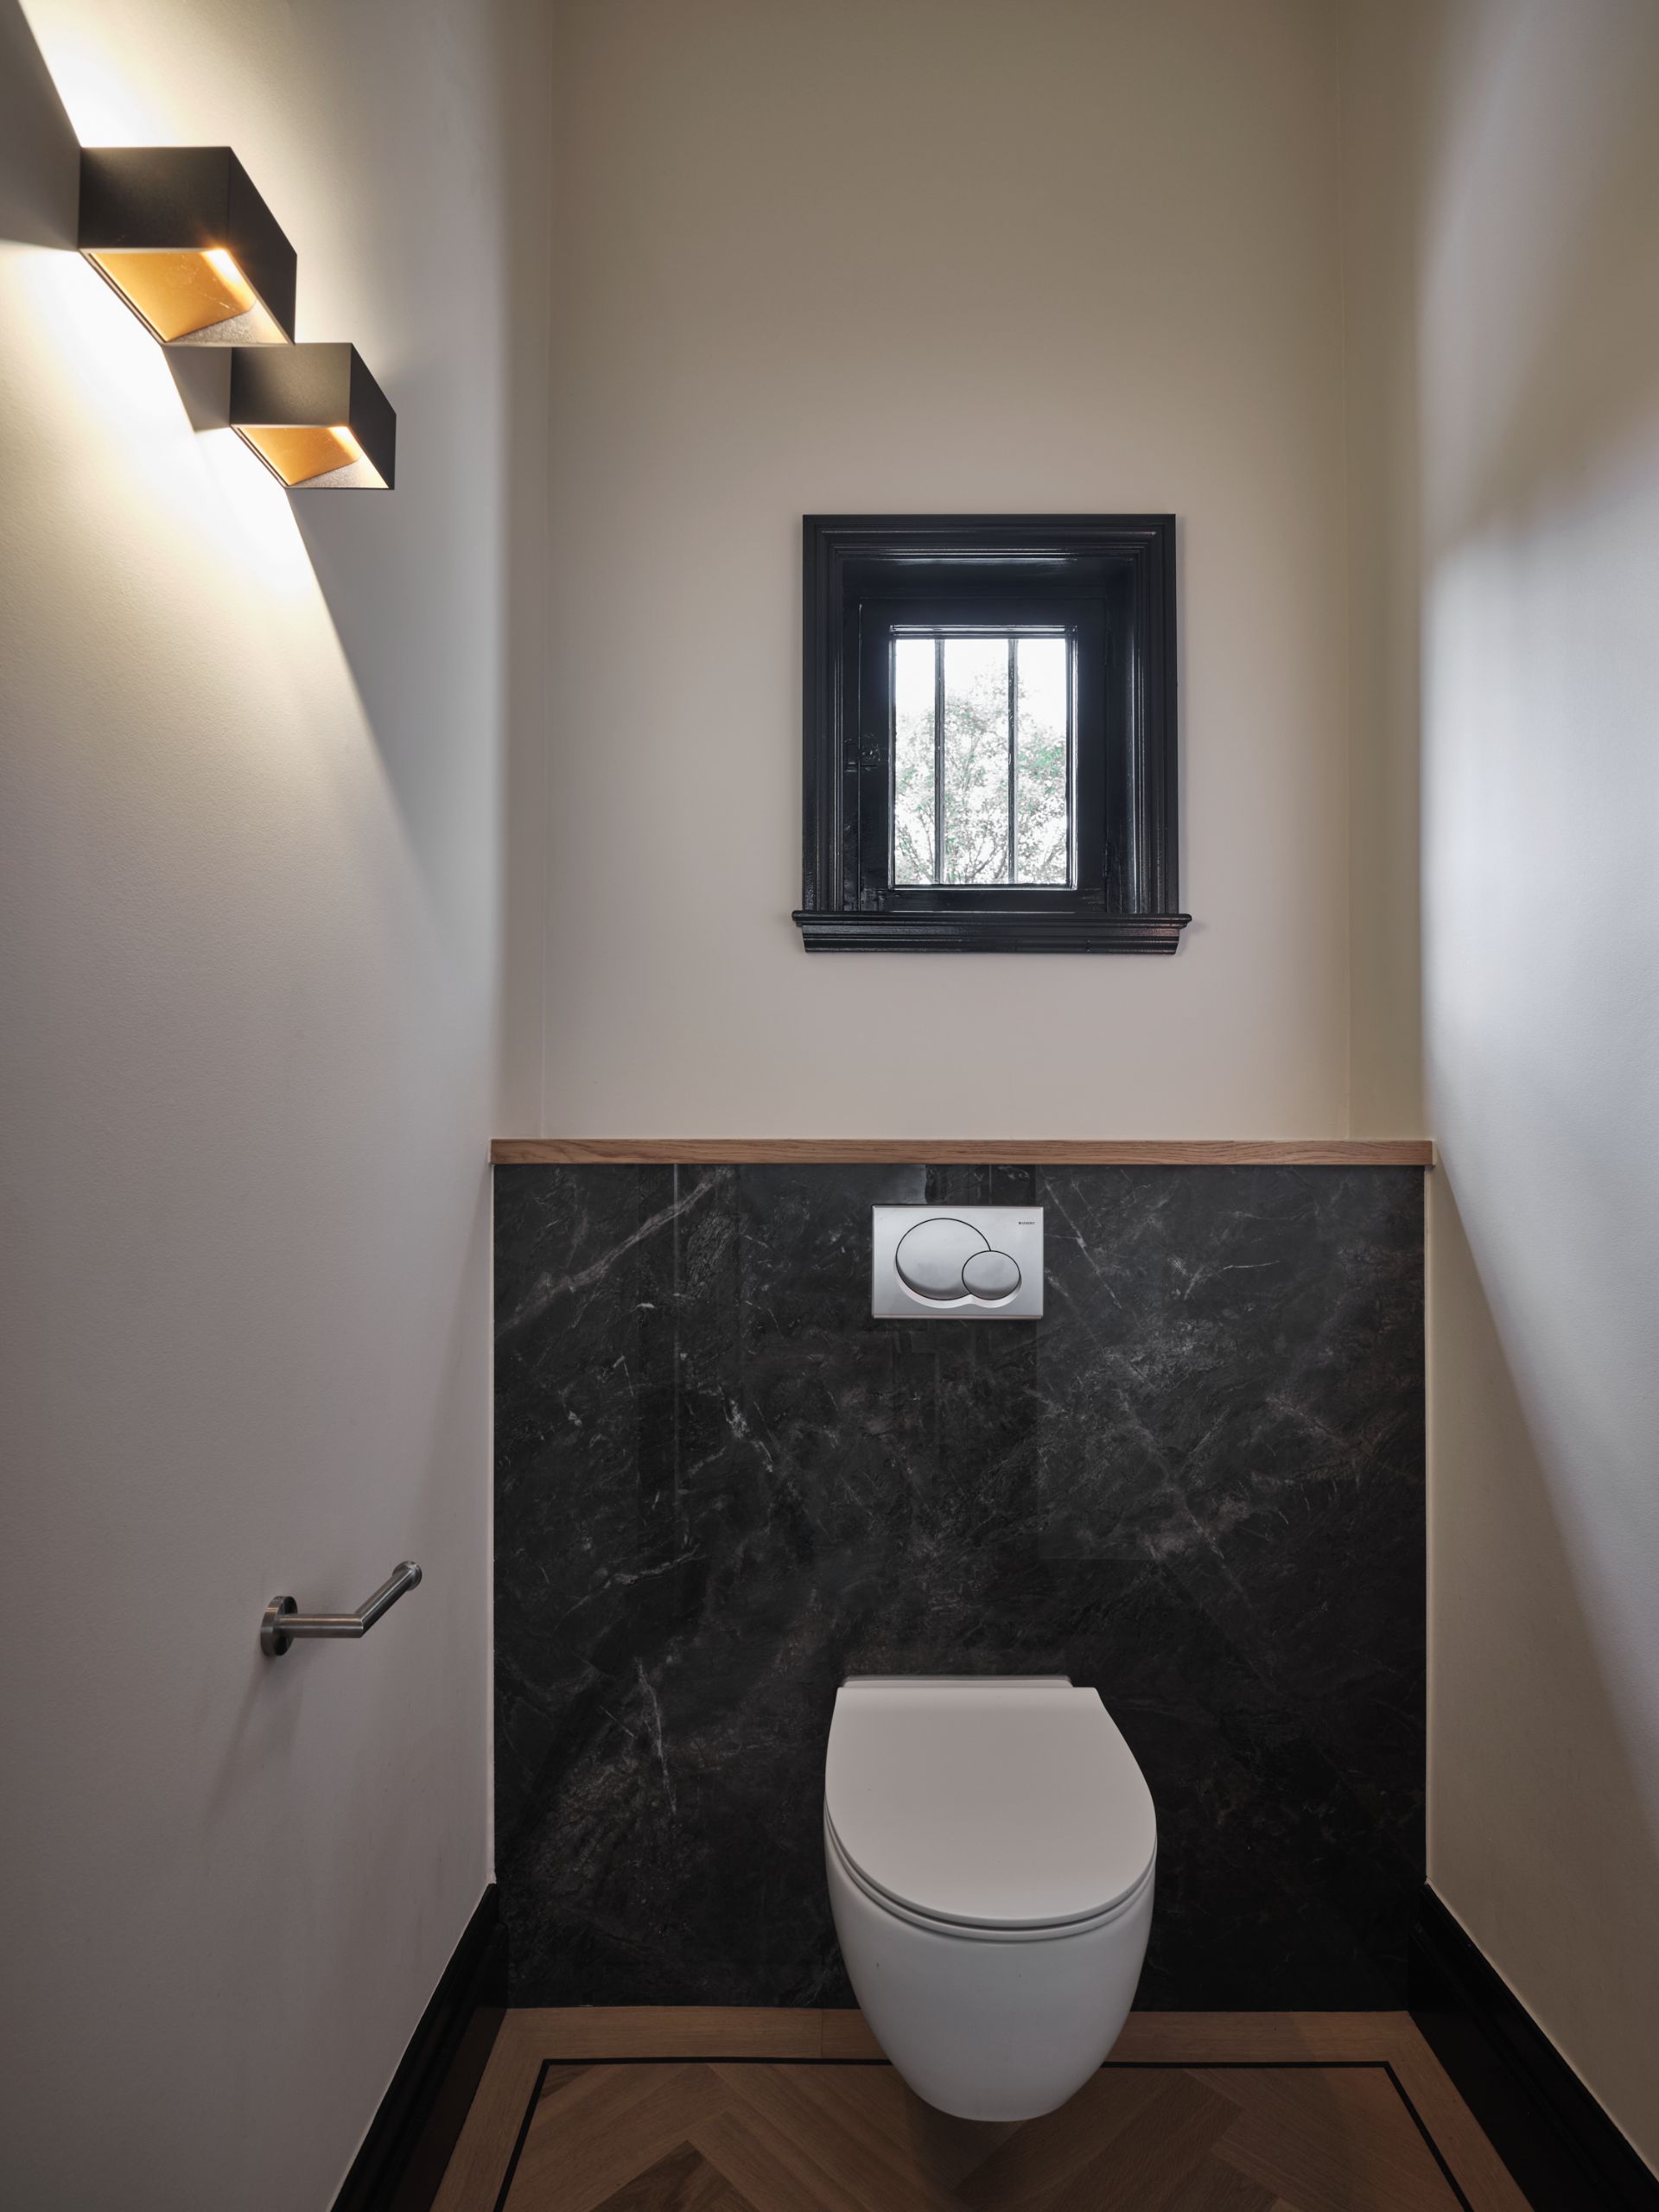 Foto: een badkamer met een moderne uitstraling      eerste kamer badkamers   015